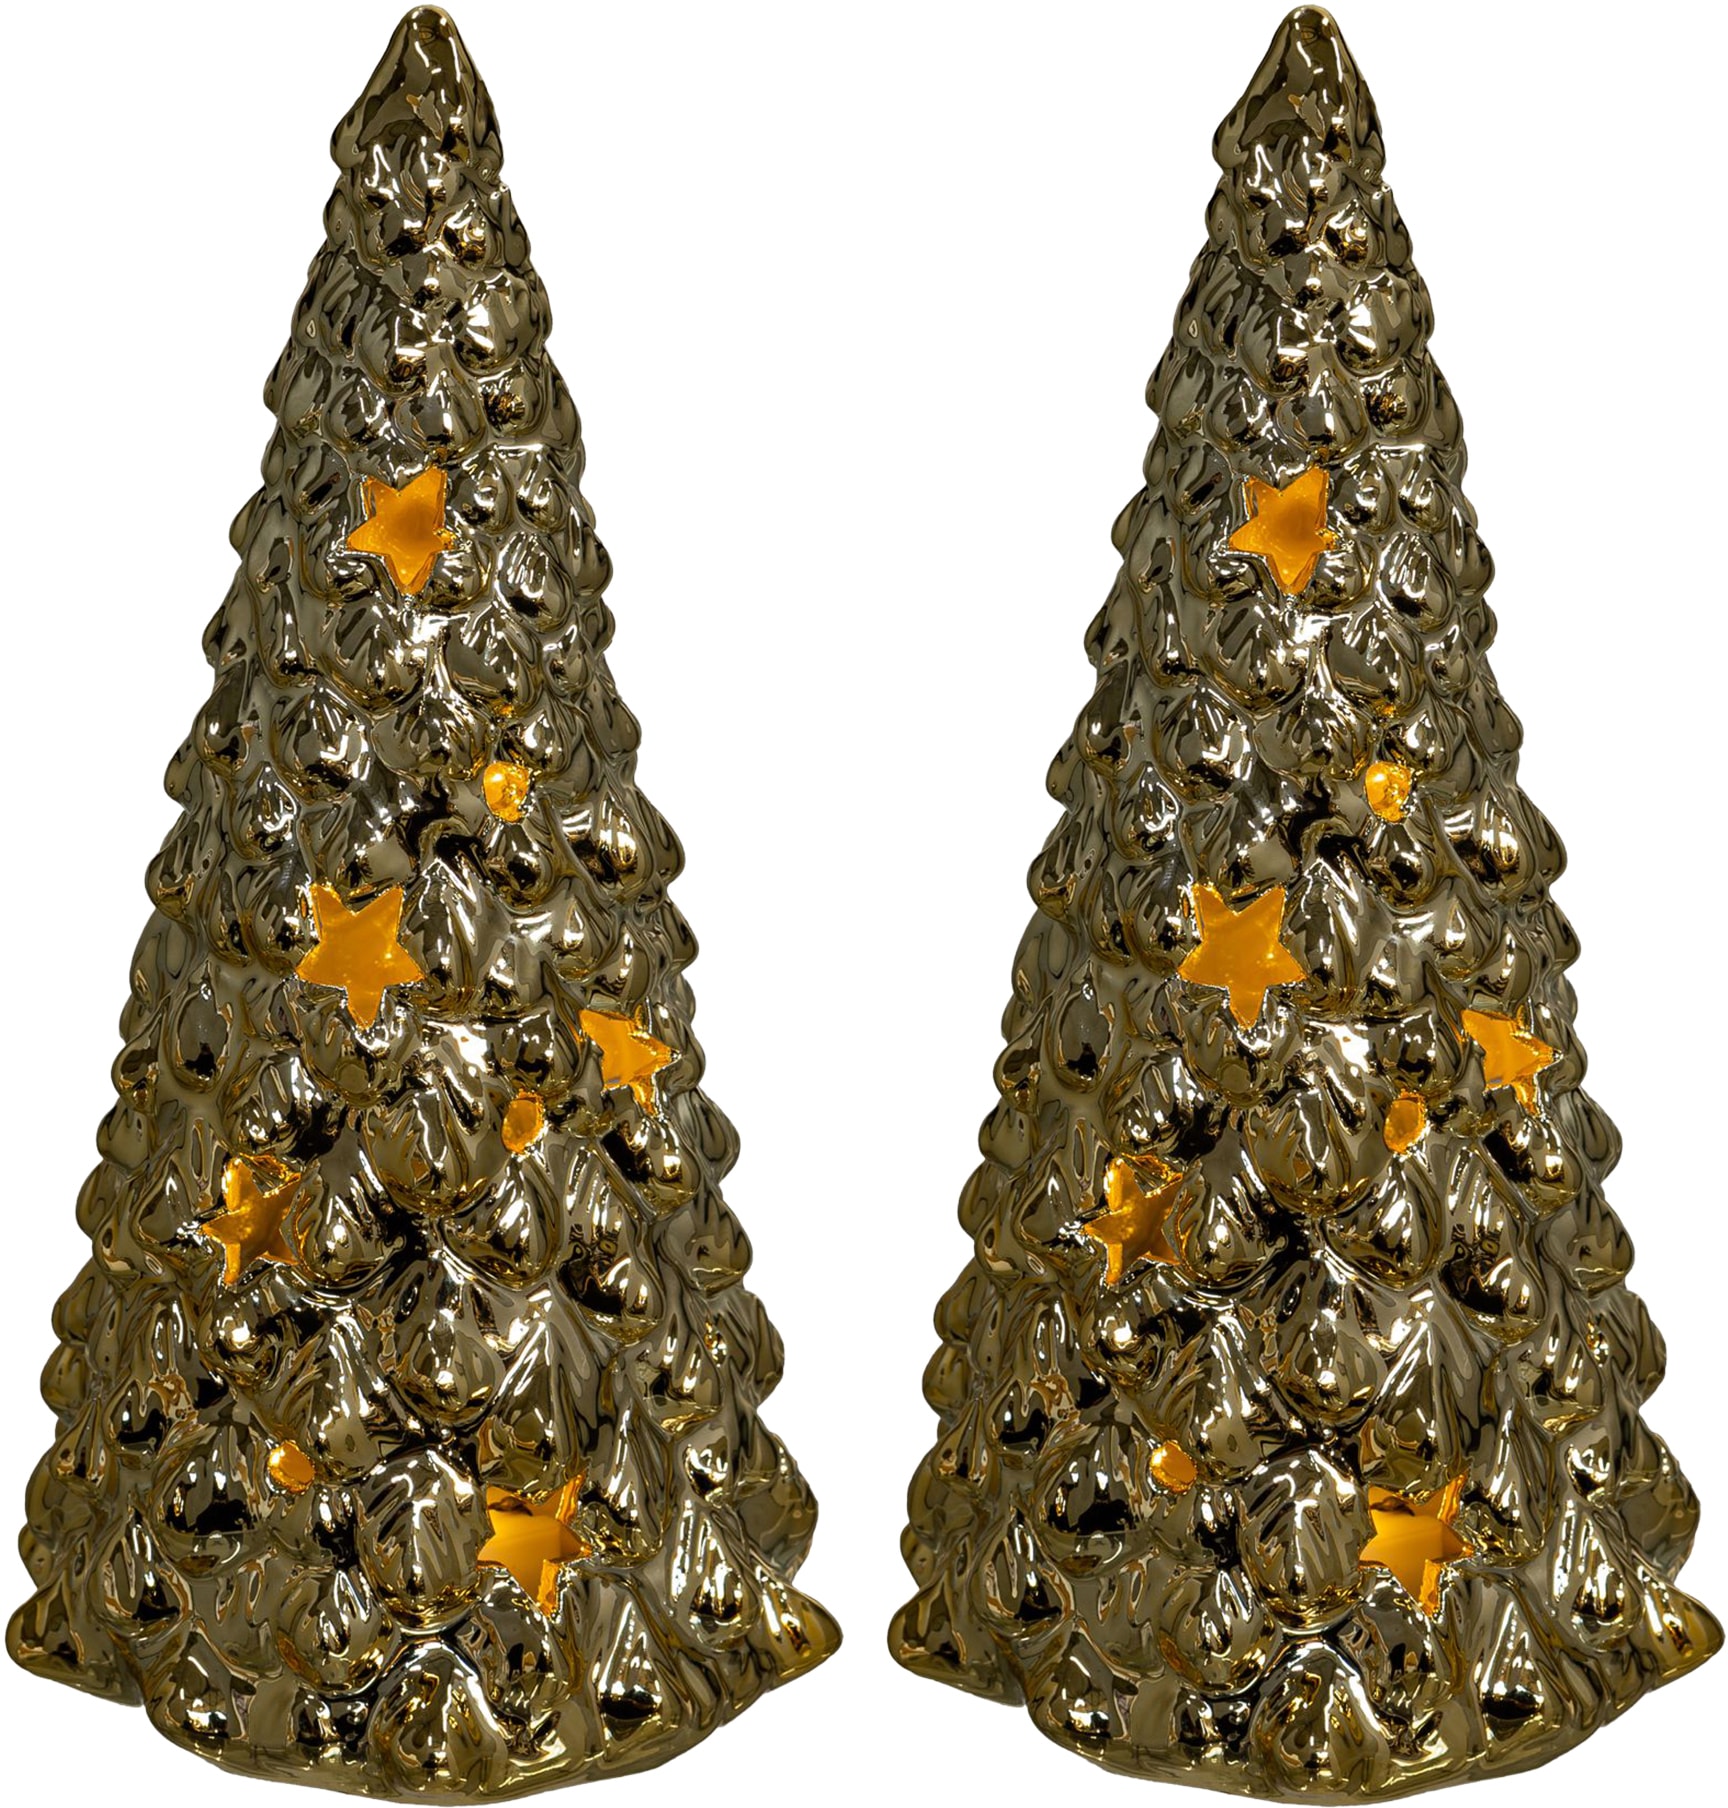 LED Weihnachtsbaum 3er Set aus Metall mit Glitzerlack Weihnachtsdeko Leuchtpyramide Deko für Weihnachten